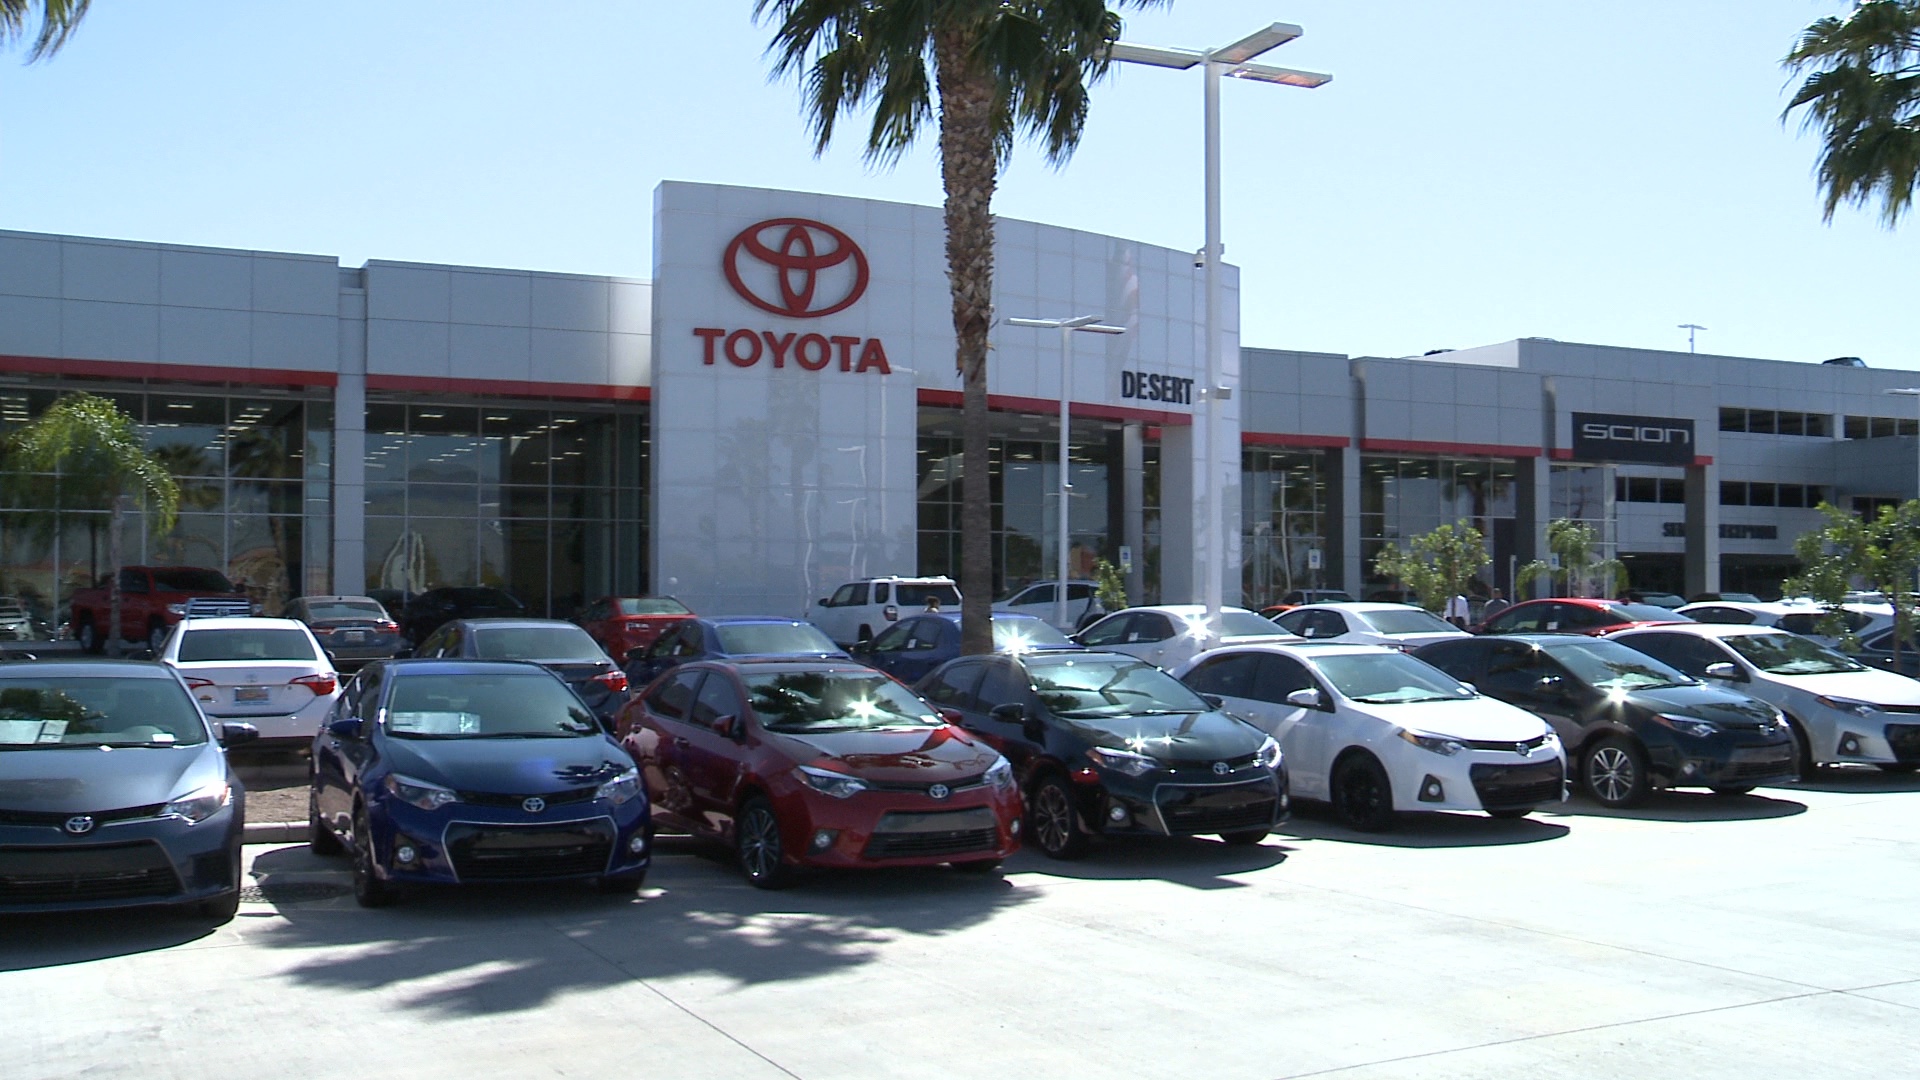 Desert Toyota Dealer: New & Used Cars For Sale In Tucson, AZ